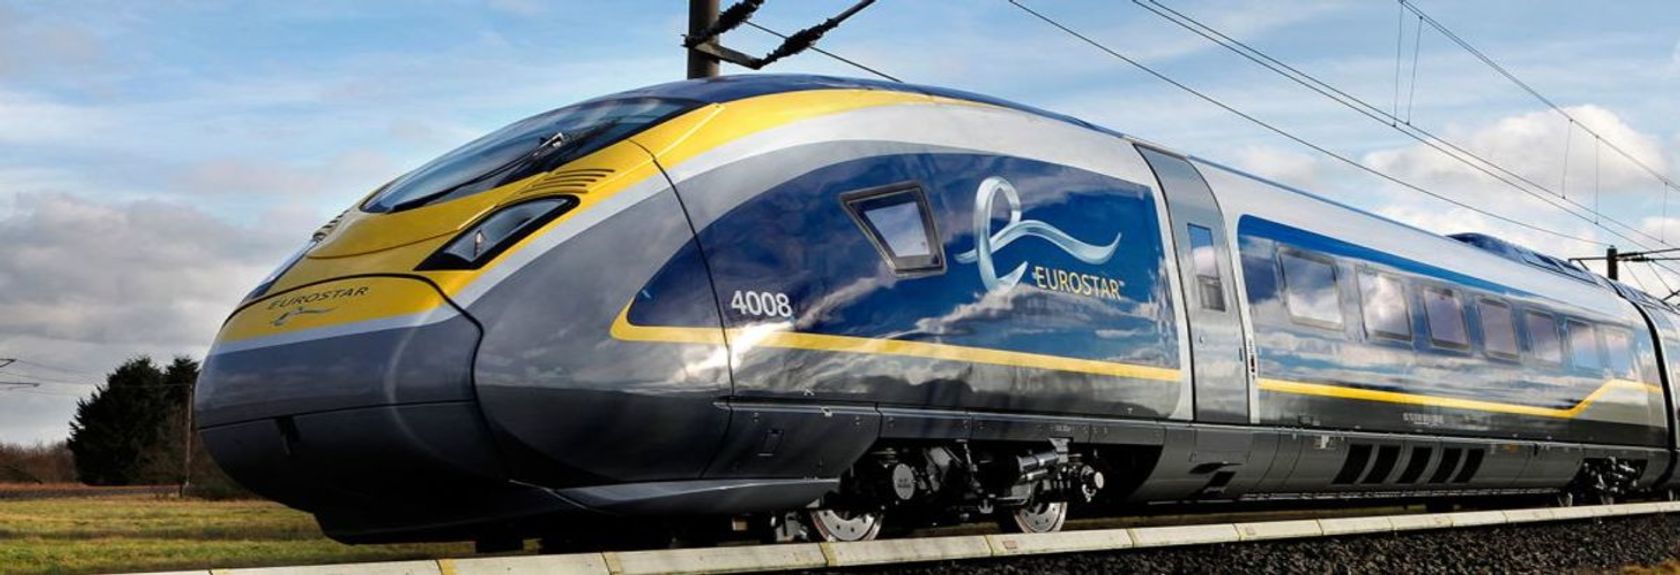 Eurostar começará em 30 de abril de 2020 com a conexão direta de trens entre Amsterdã Central e Londres St. Pancras, eliminando a necessidade de trocar de trem para Bruxelas. Devido a esta mudança necessária em relação ao controle de passaportes, a viagem de trem levou mais de três quartos de hora a mais, o que logo será coisa do passado! A partir de 18 de maio, o Eurostar também funcionará diretamente de Roterdã.